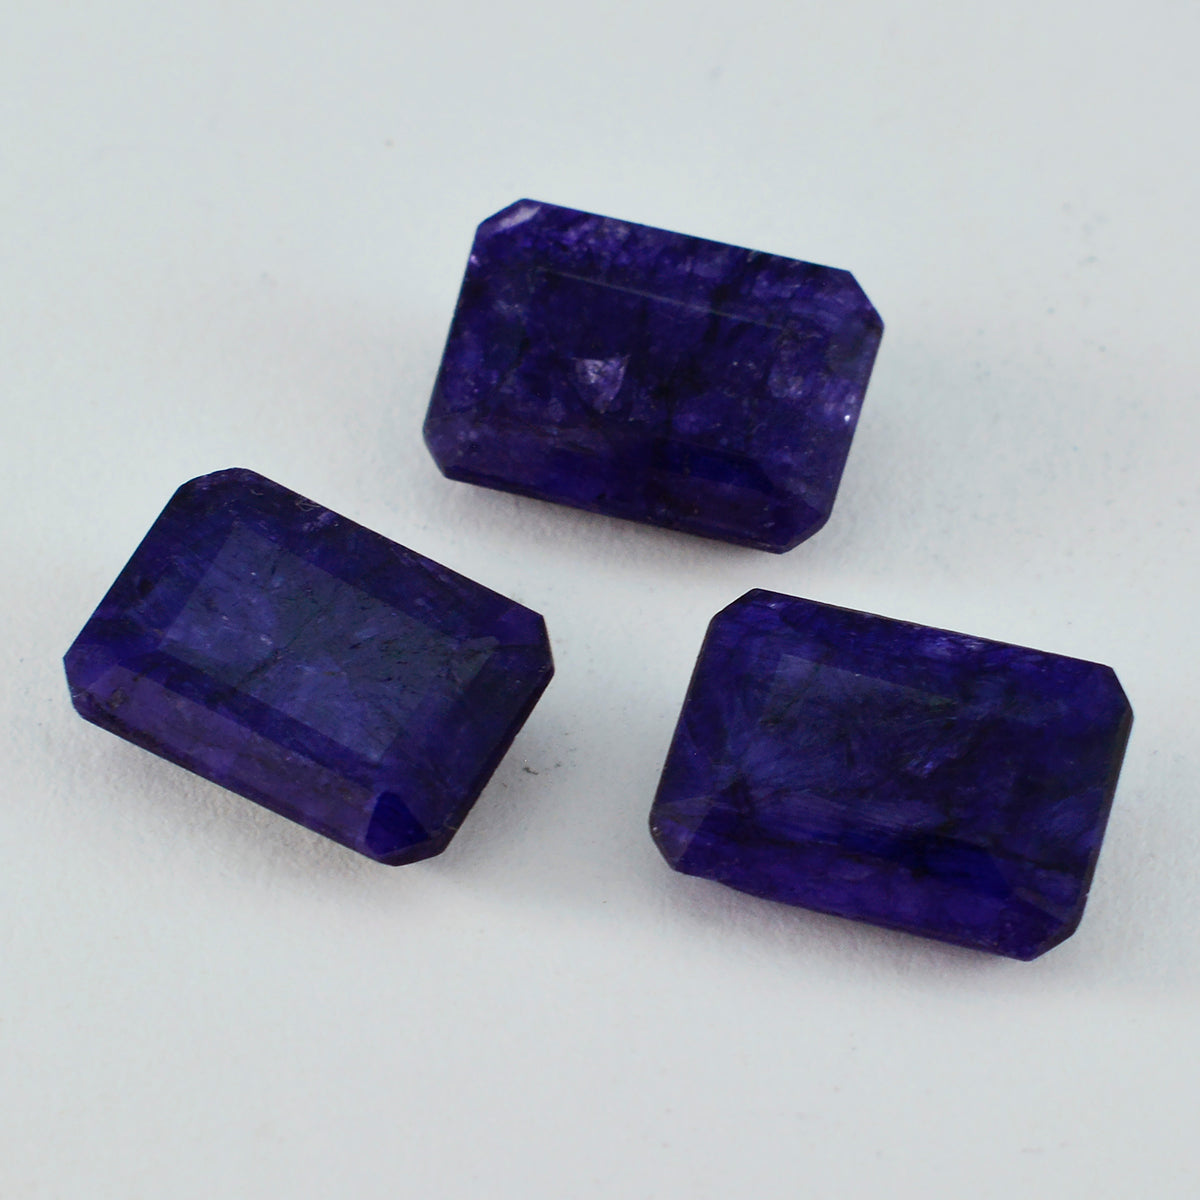 riyogems 1pc ナチュラル ブルー ジャスパー ファセット 10x14 mm 八角形の驚くべき品質の宝石